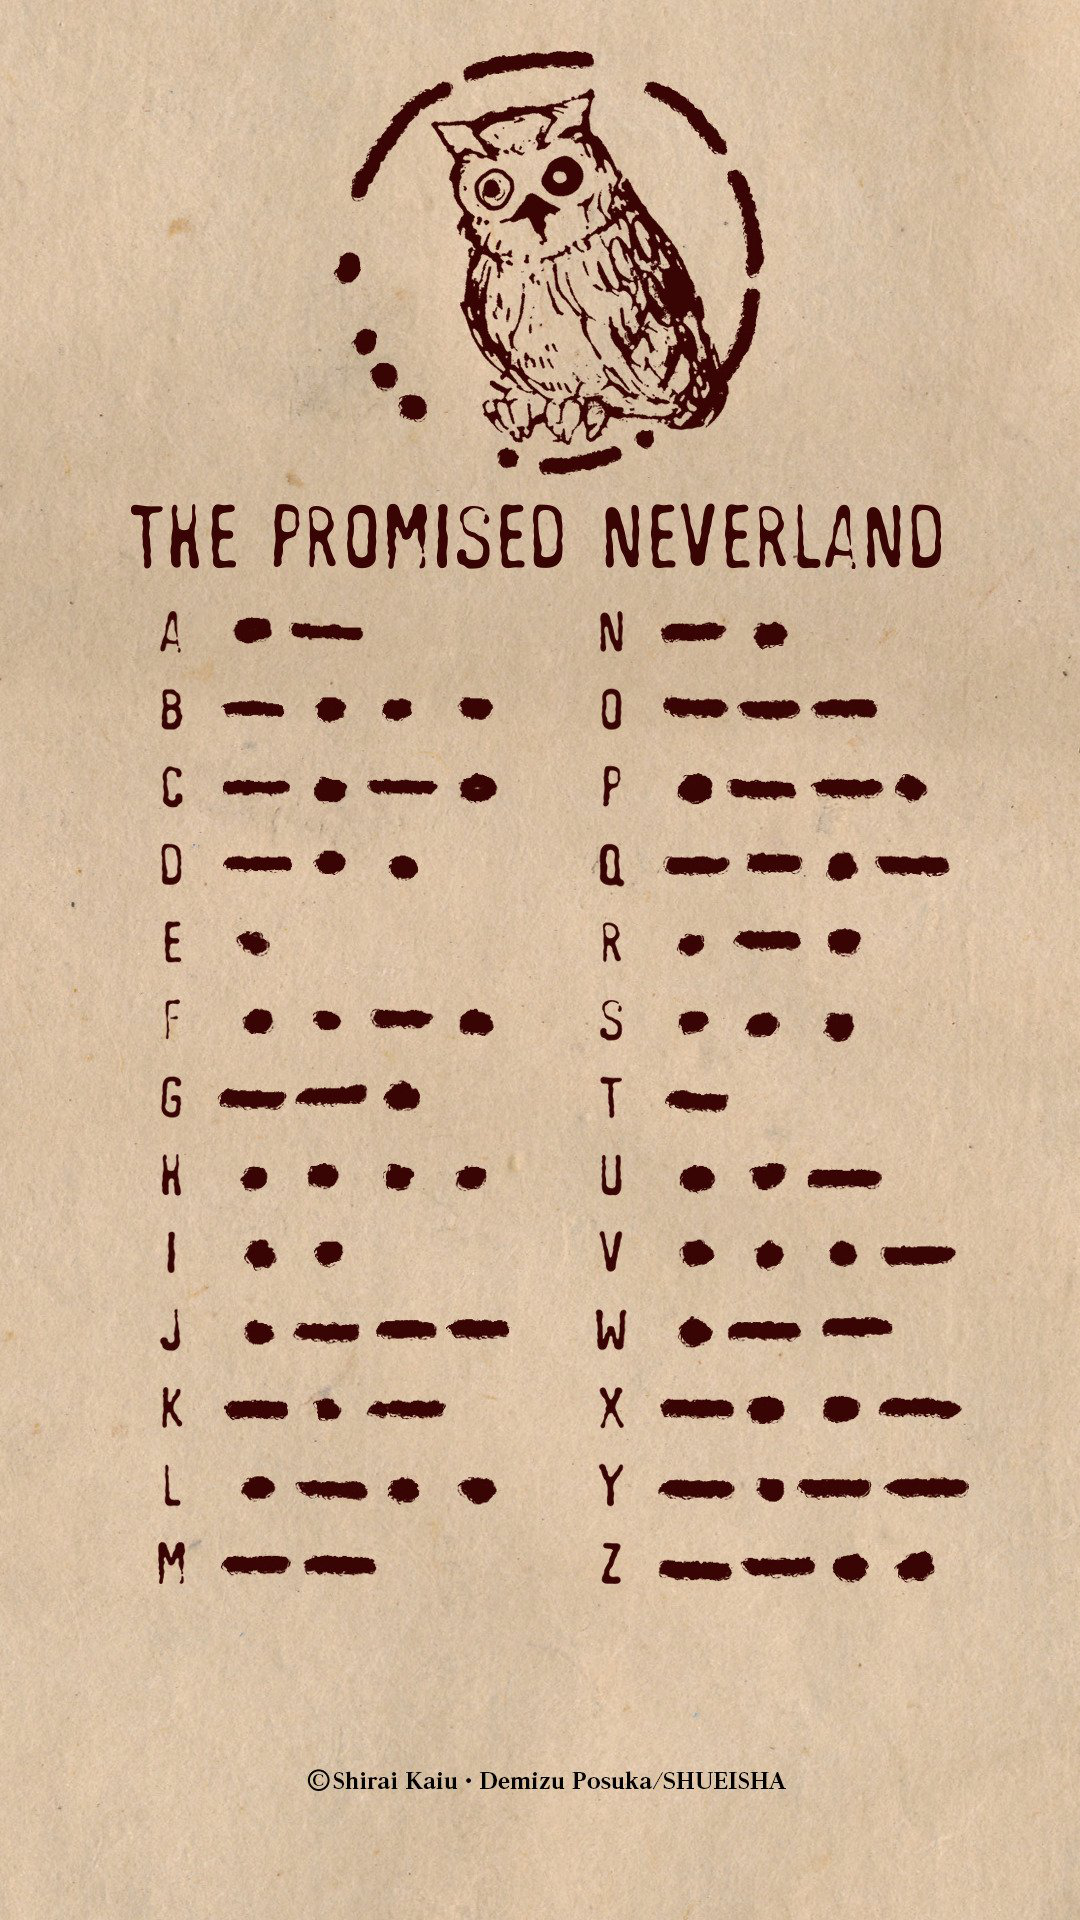 The Promised Neverland (season 2) - Wikipedia